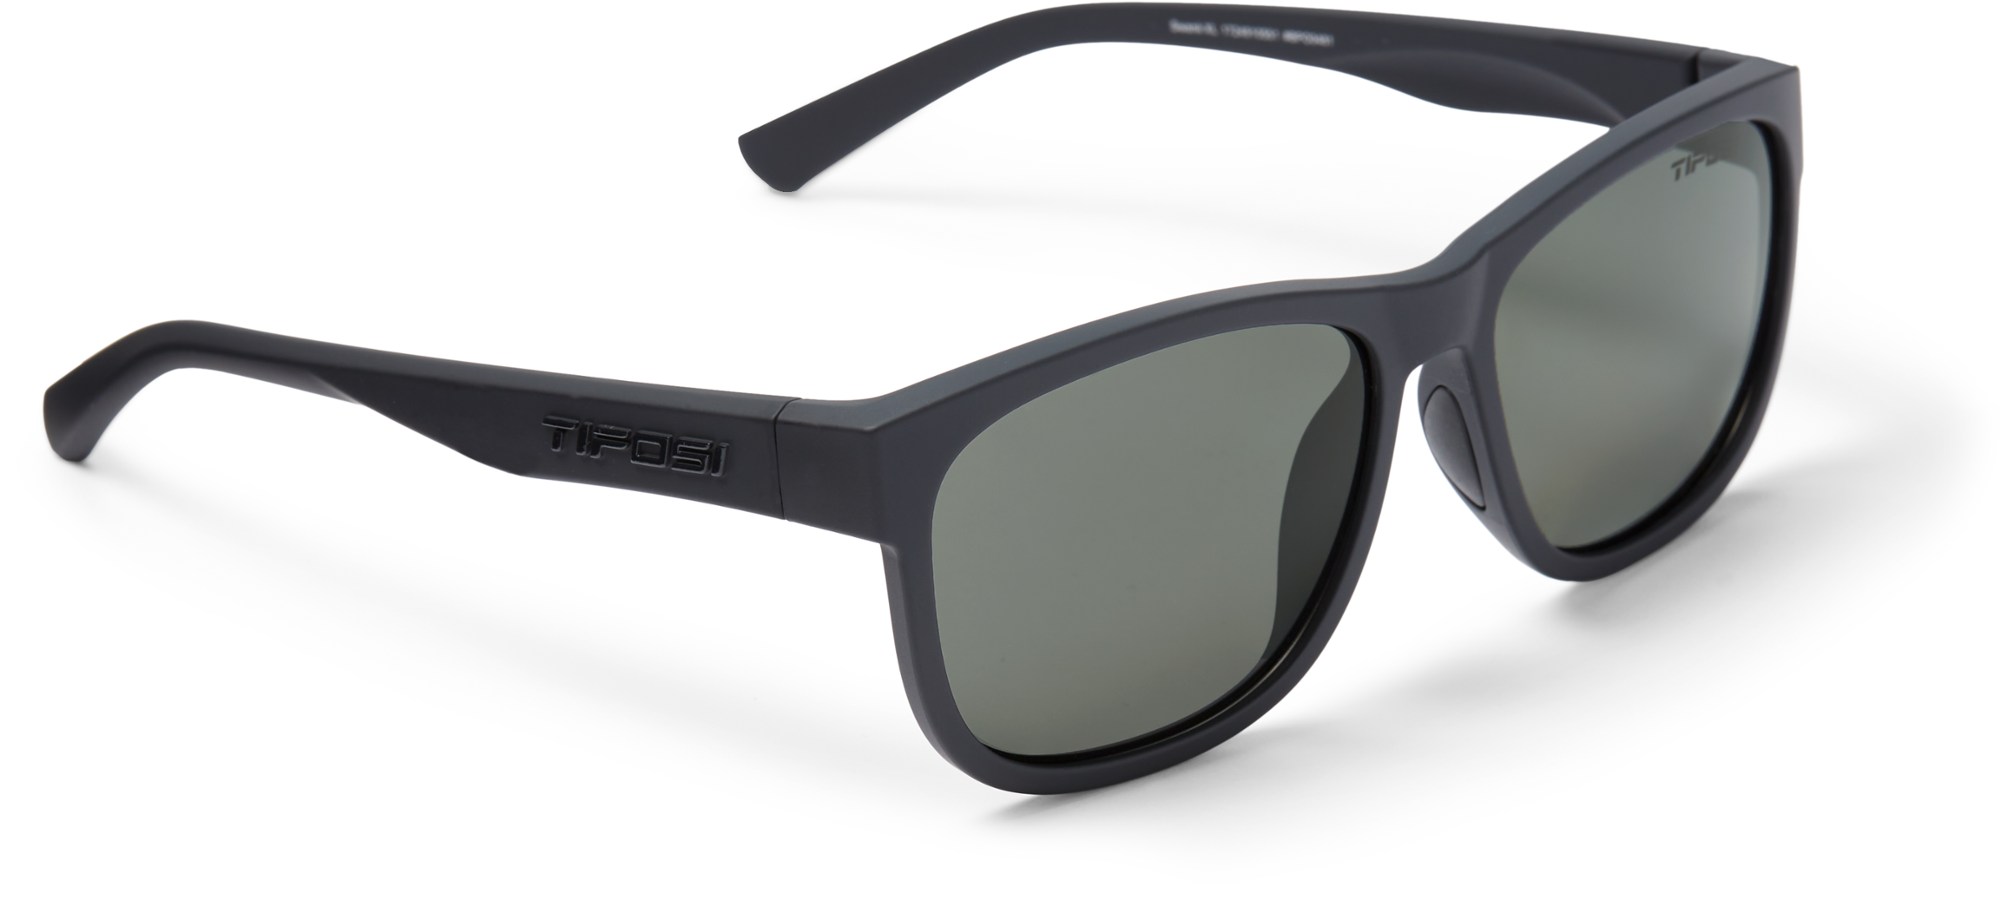 цена Поляризованные солнцезащитные очки Swank XL Tifosi, черный